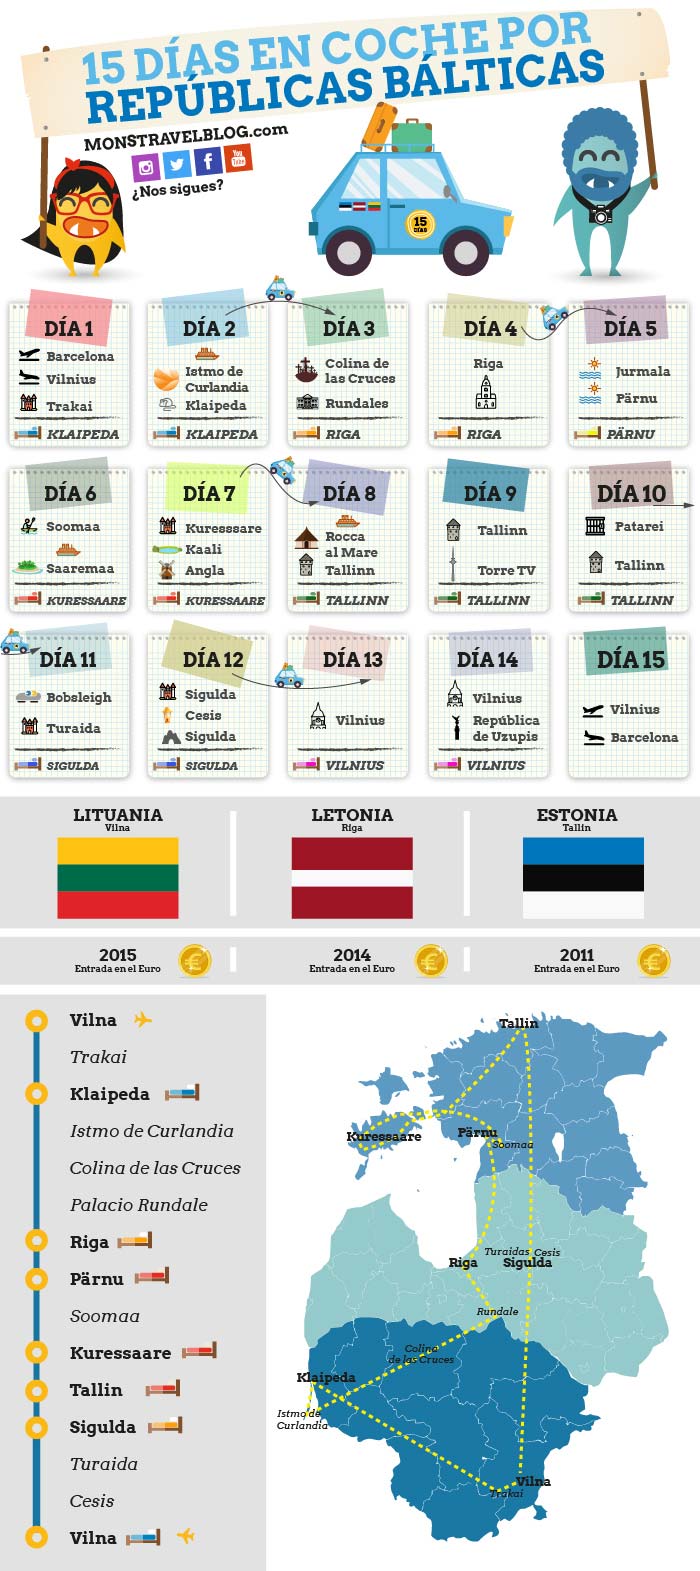 infografia-ruta-republicas-balticas-15-dias